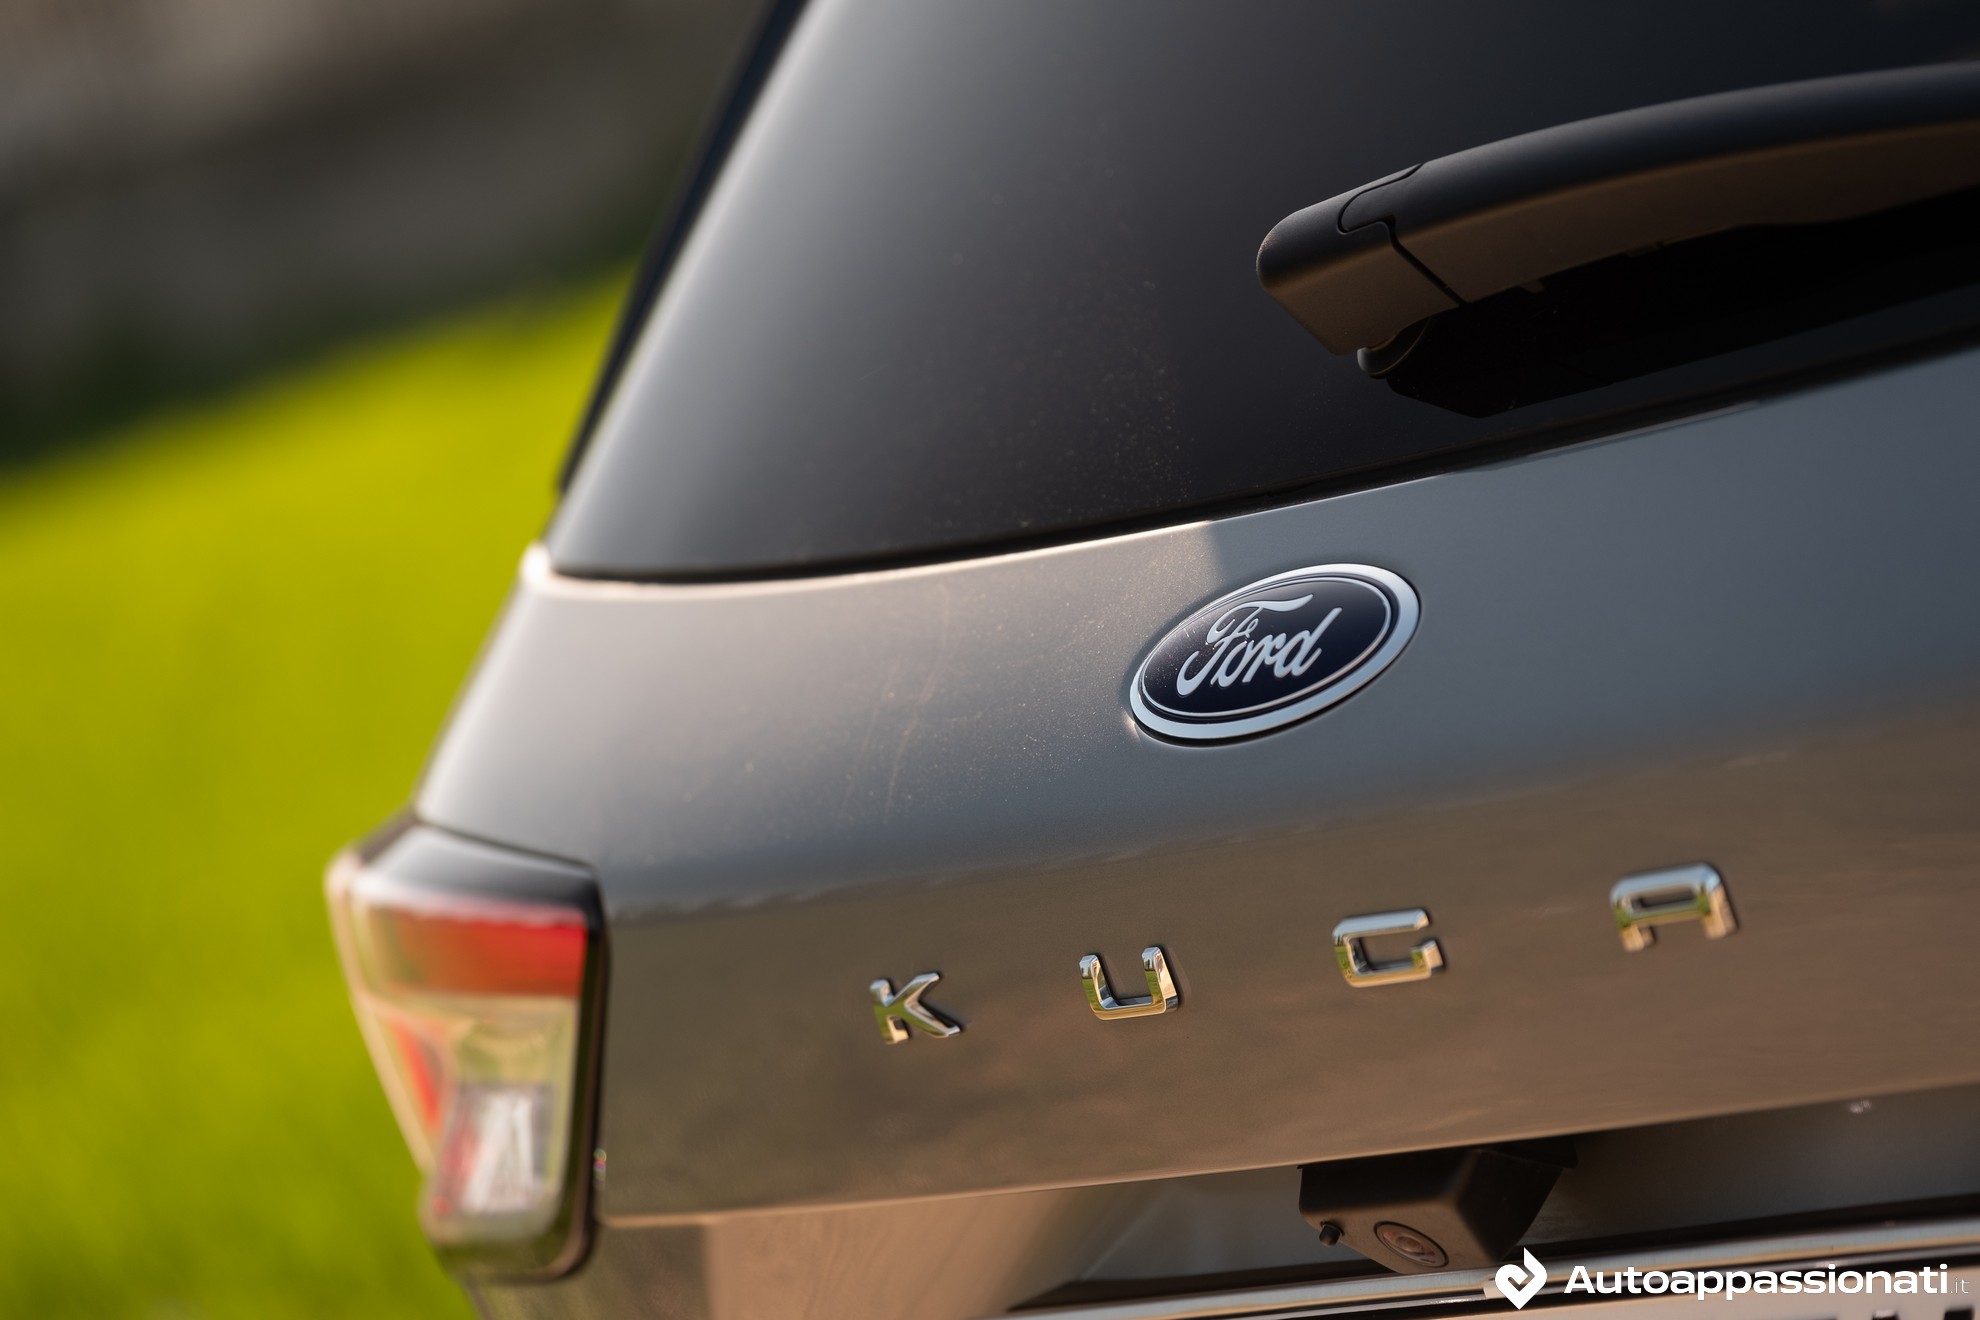 Promozioni Ford Kuga dicembre 2021: le offerte su ibrido e Diesel